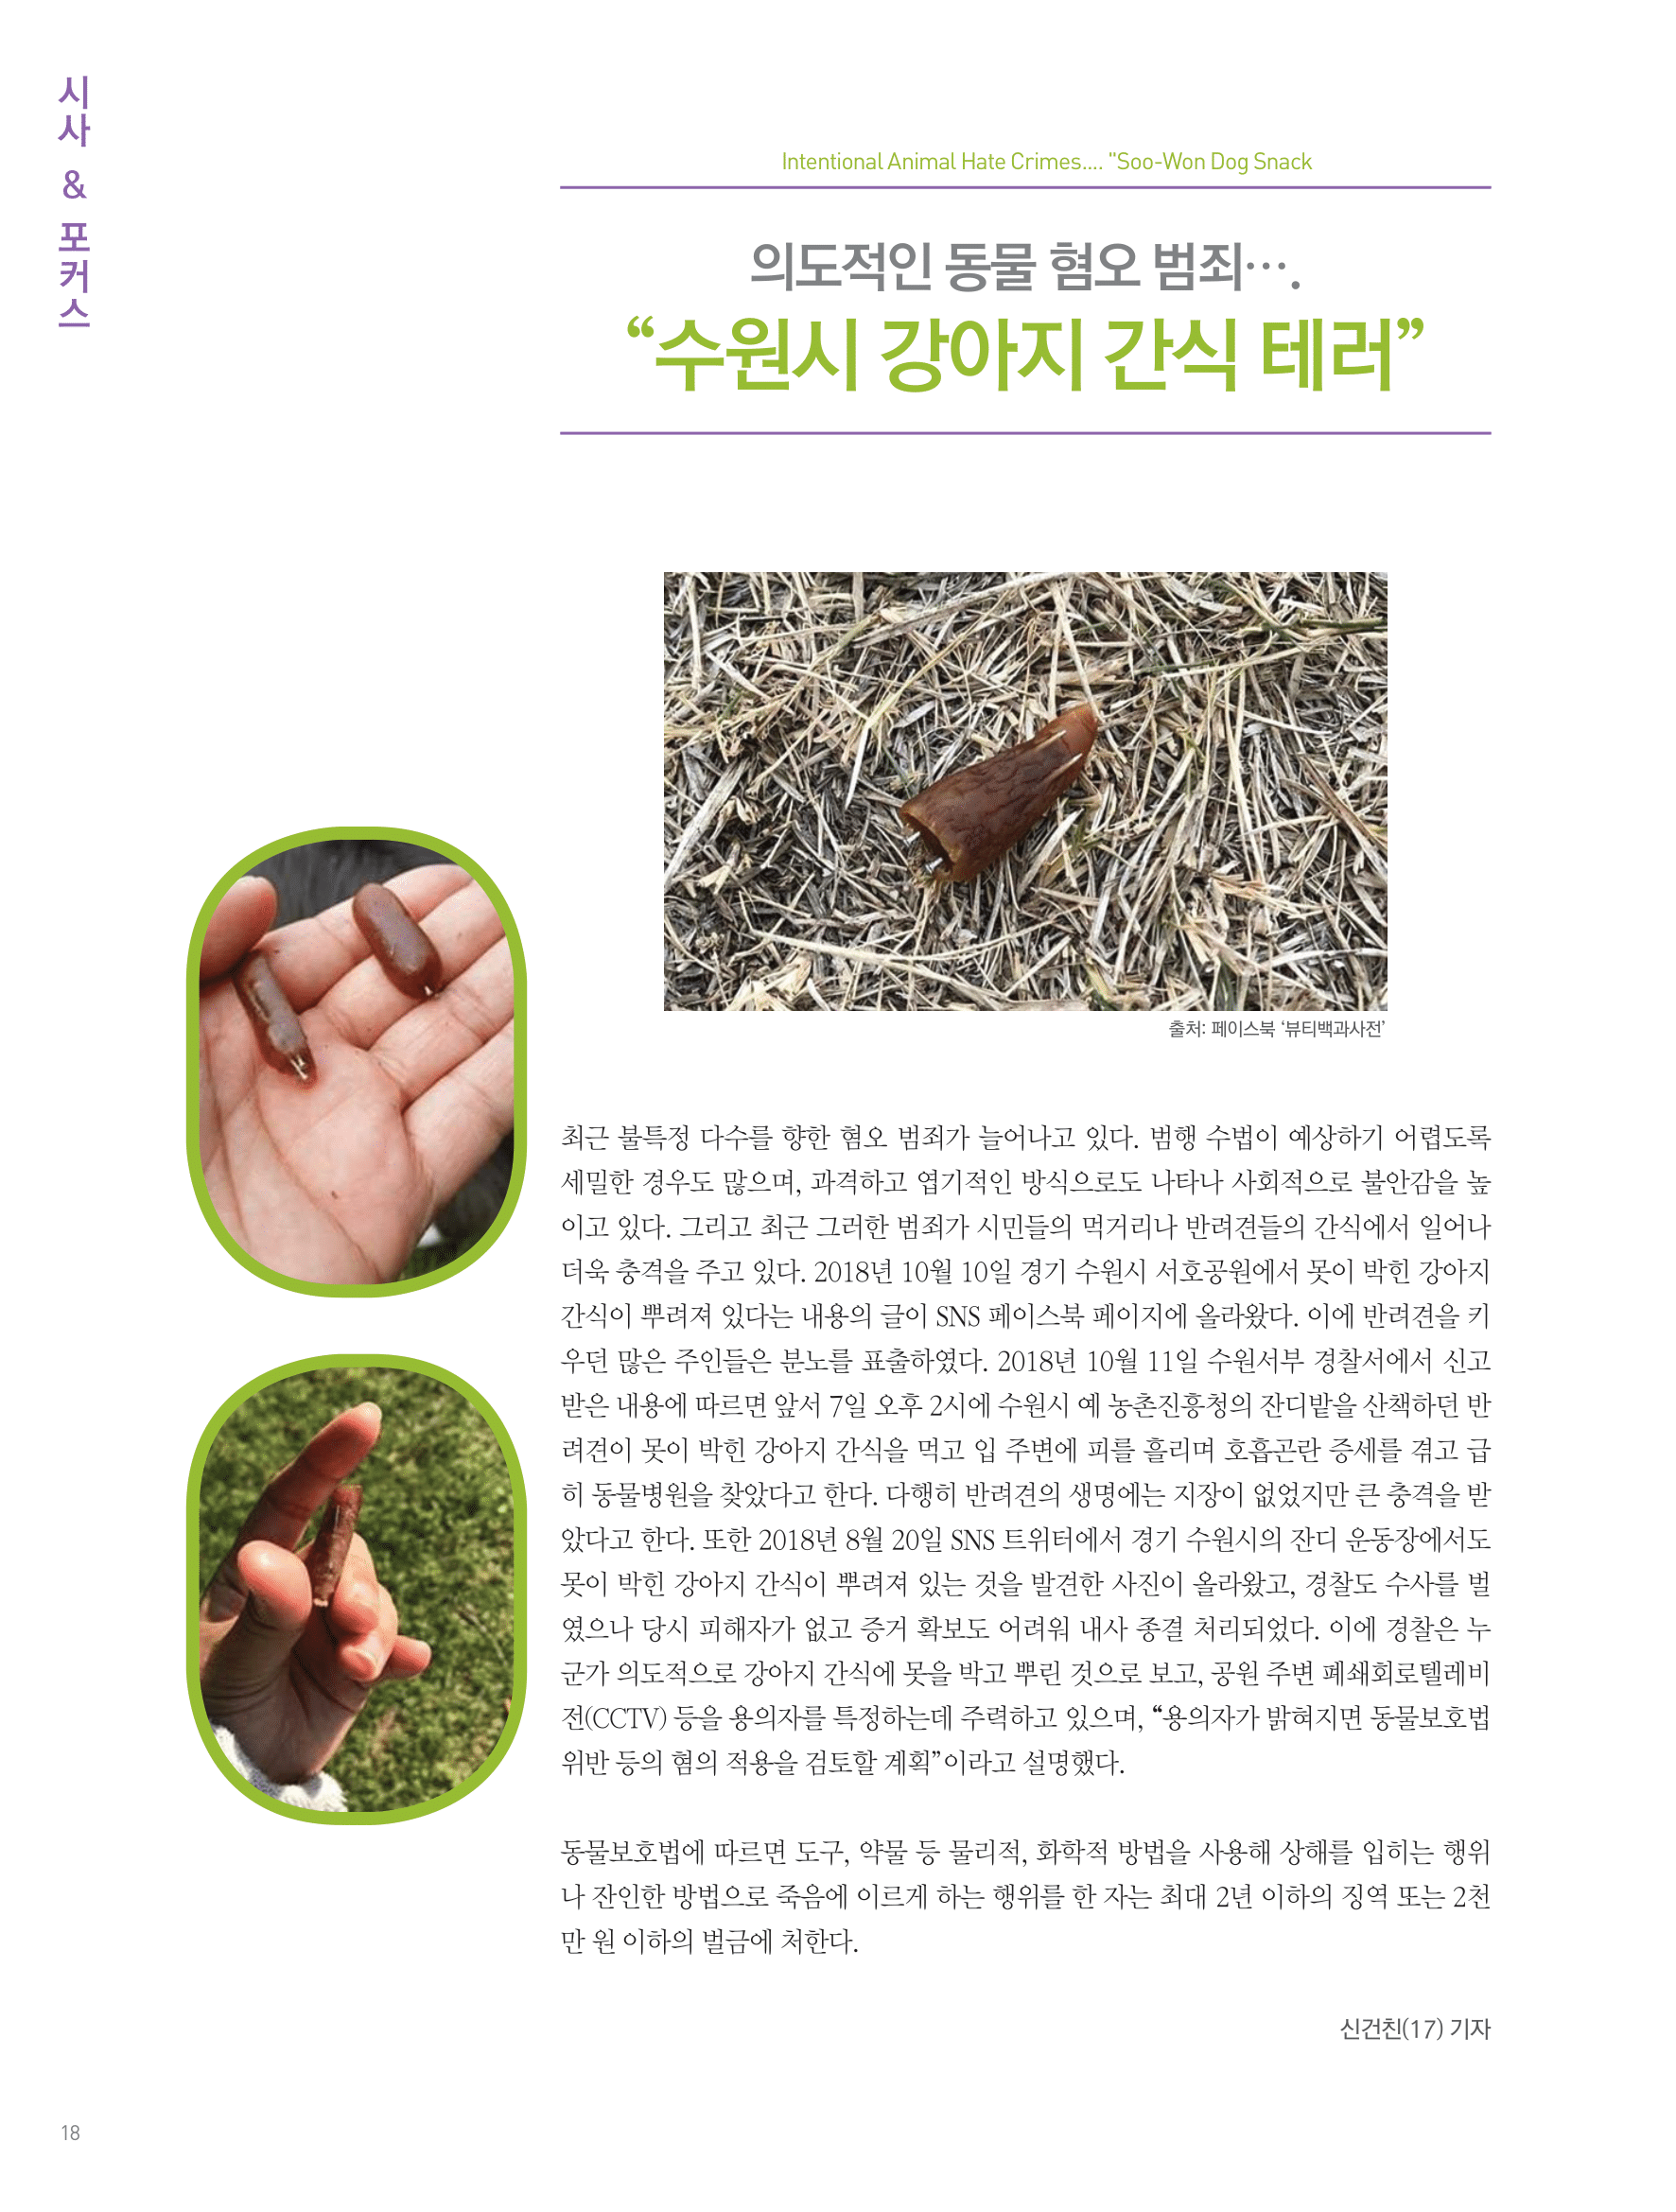 뜻새김 신문 72호 18